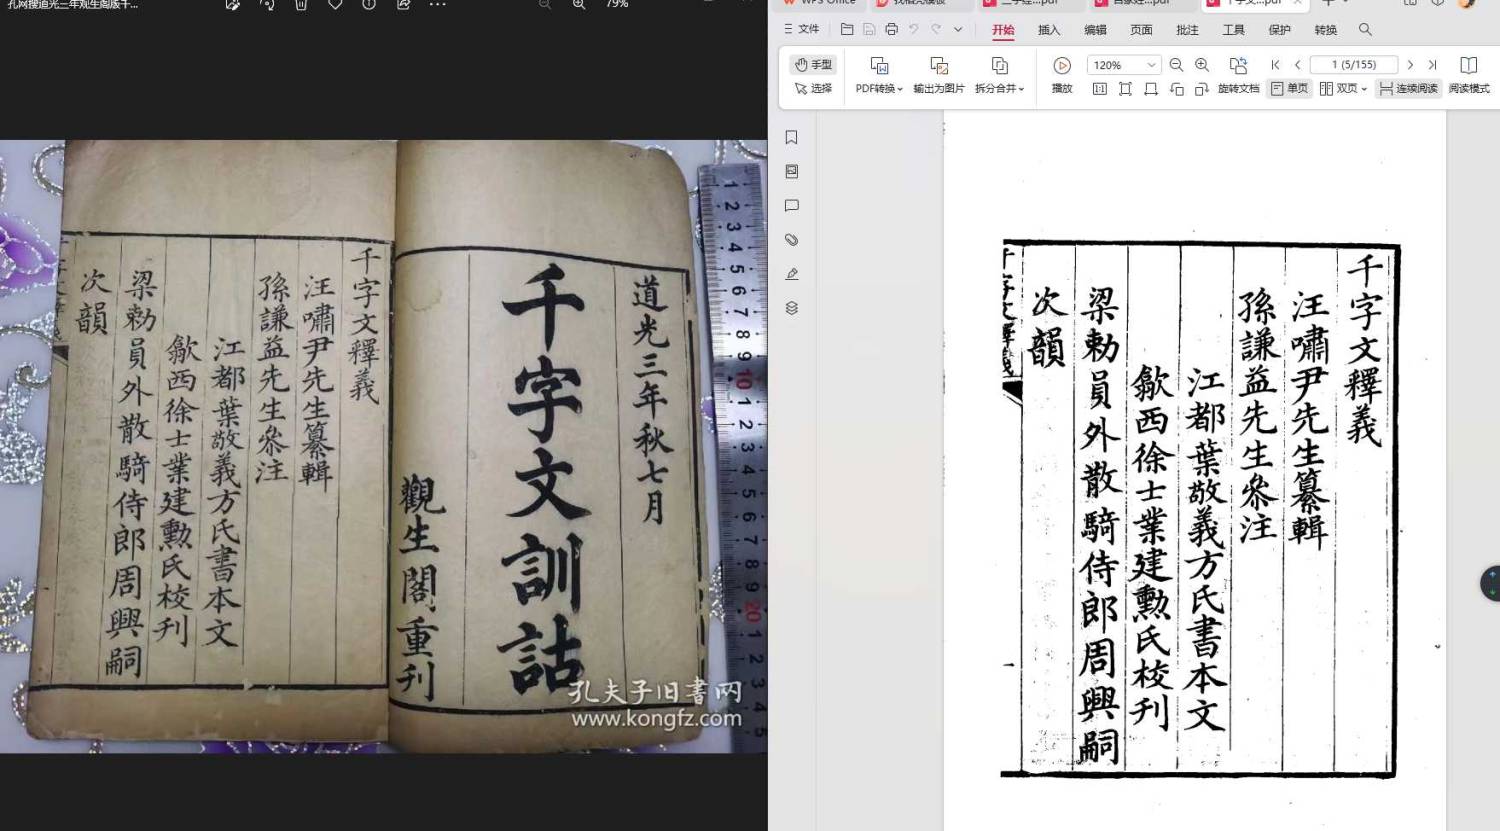 千字文：左国图道光三年观生阁版 右中国书店影印版